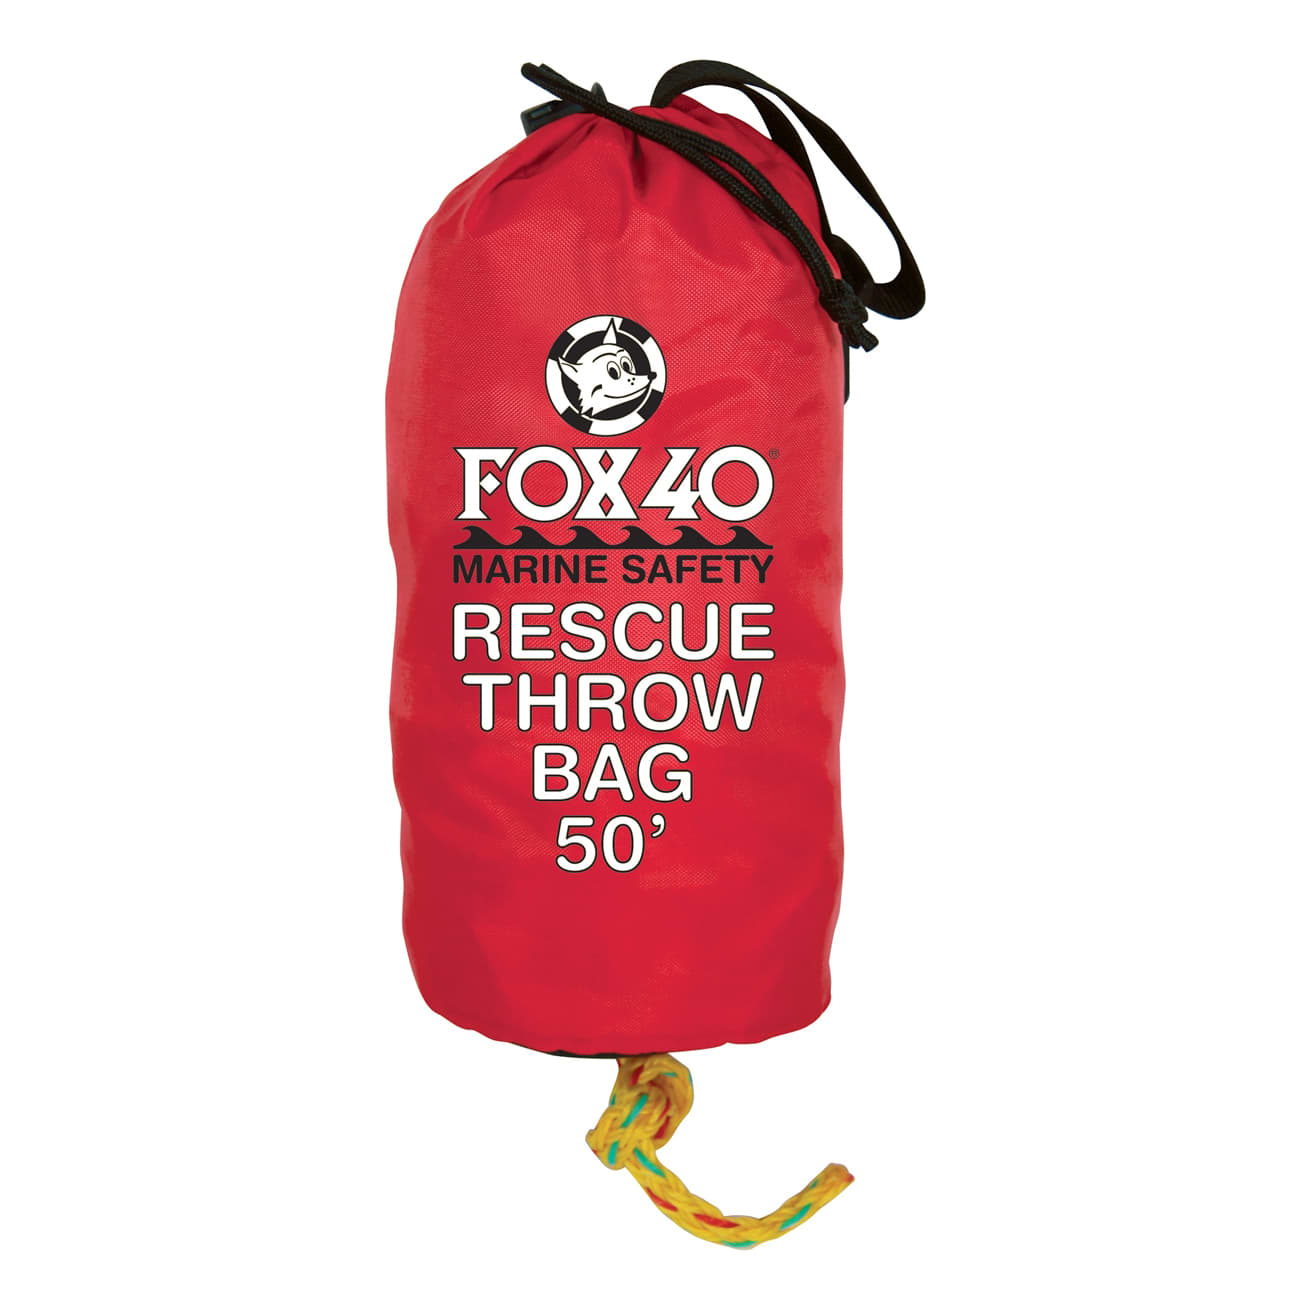 Fox 40® Marine Rescue Throw Bags